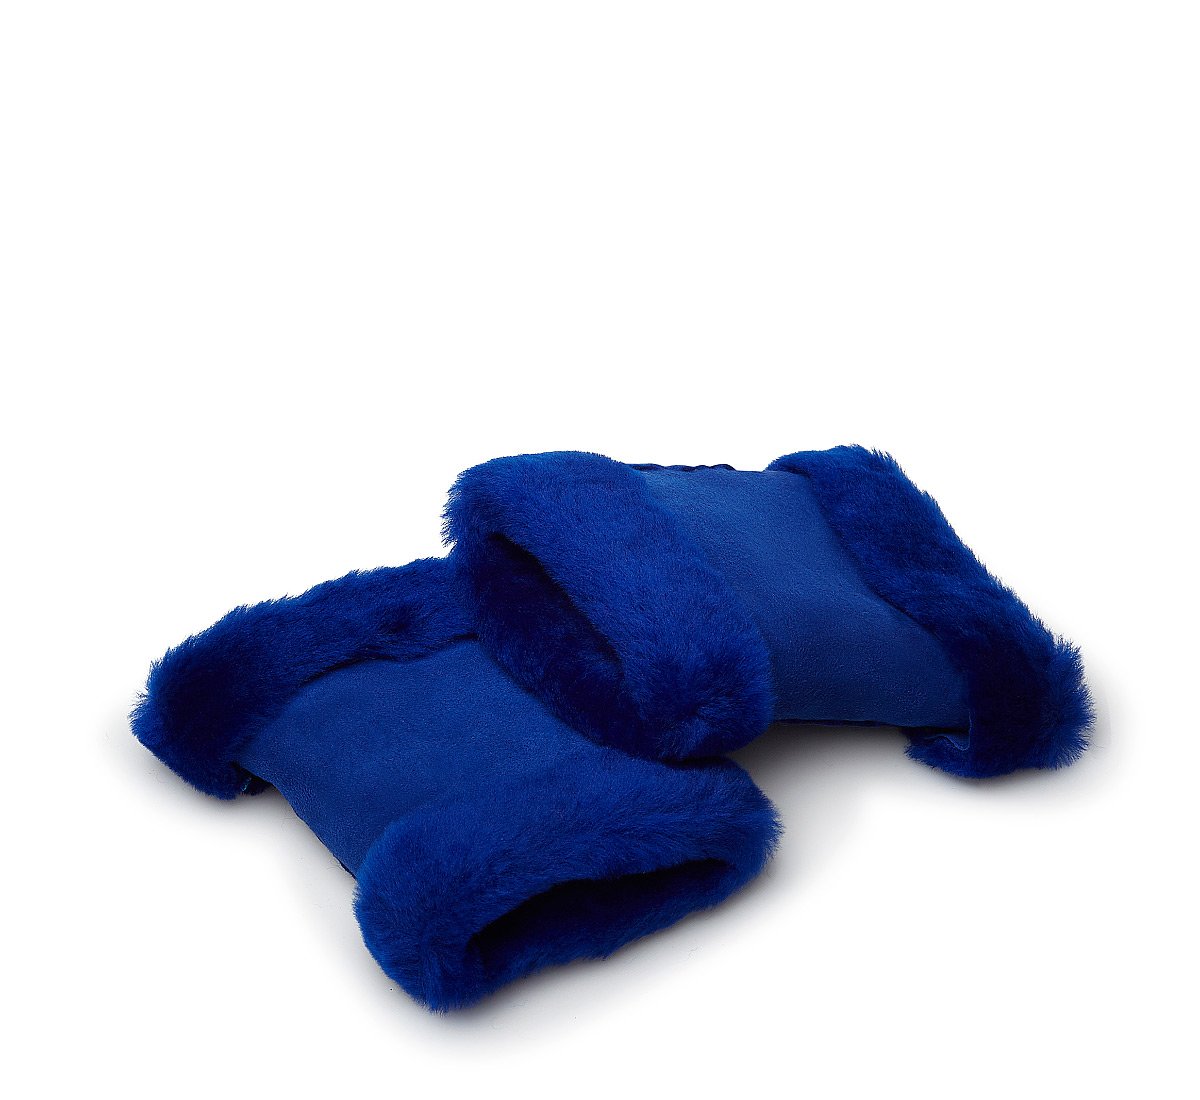 Blue fingerless gloves